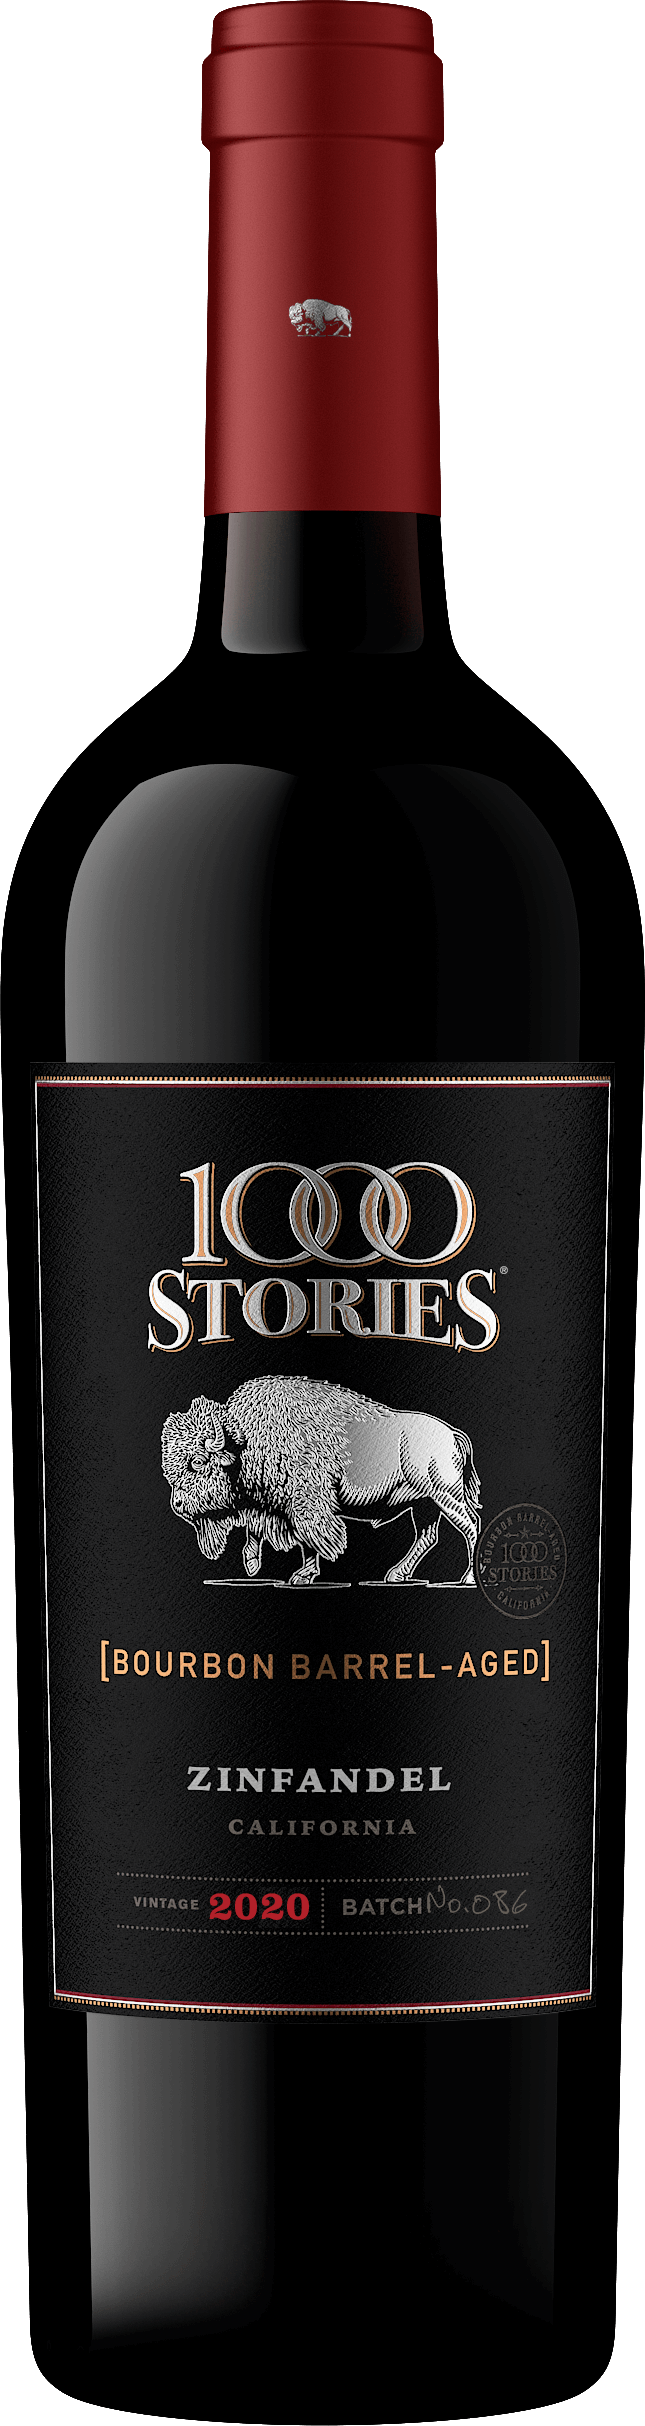 1000 Stories Zinfandel 2020 - Batch 86